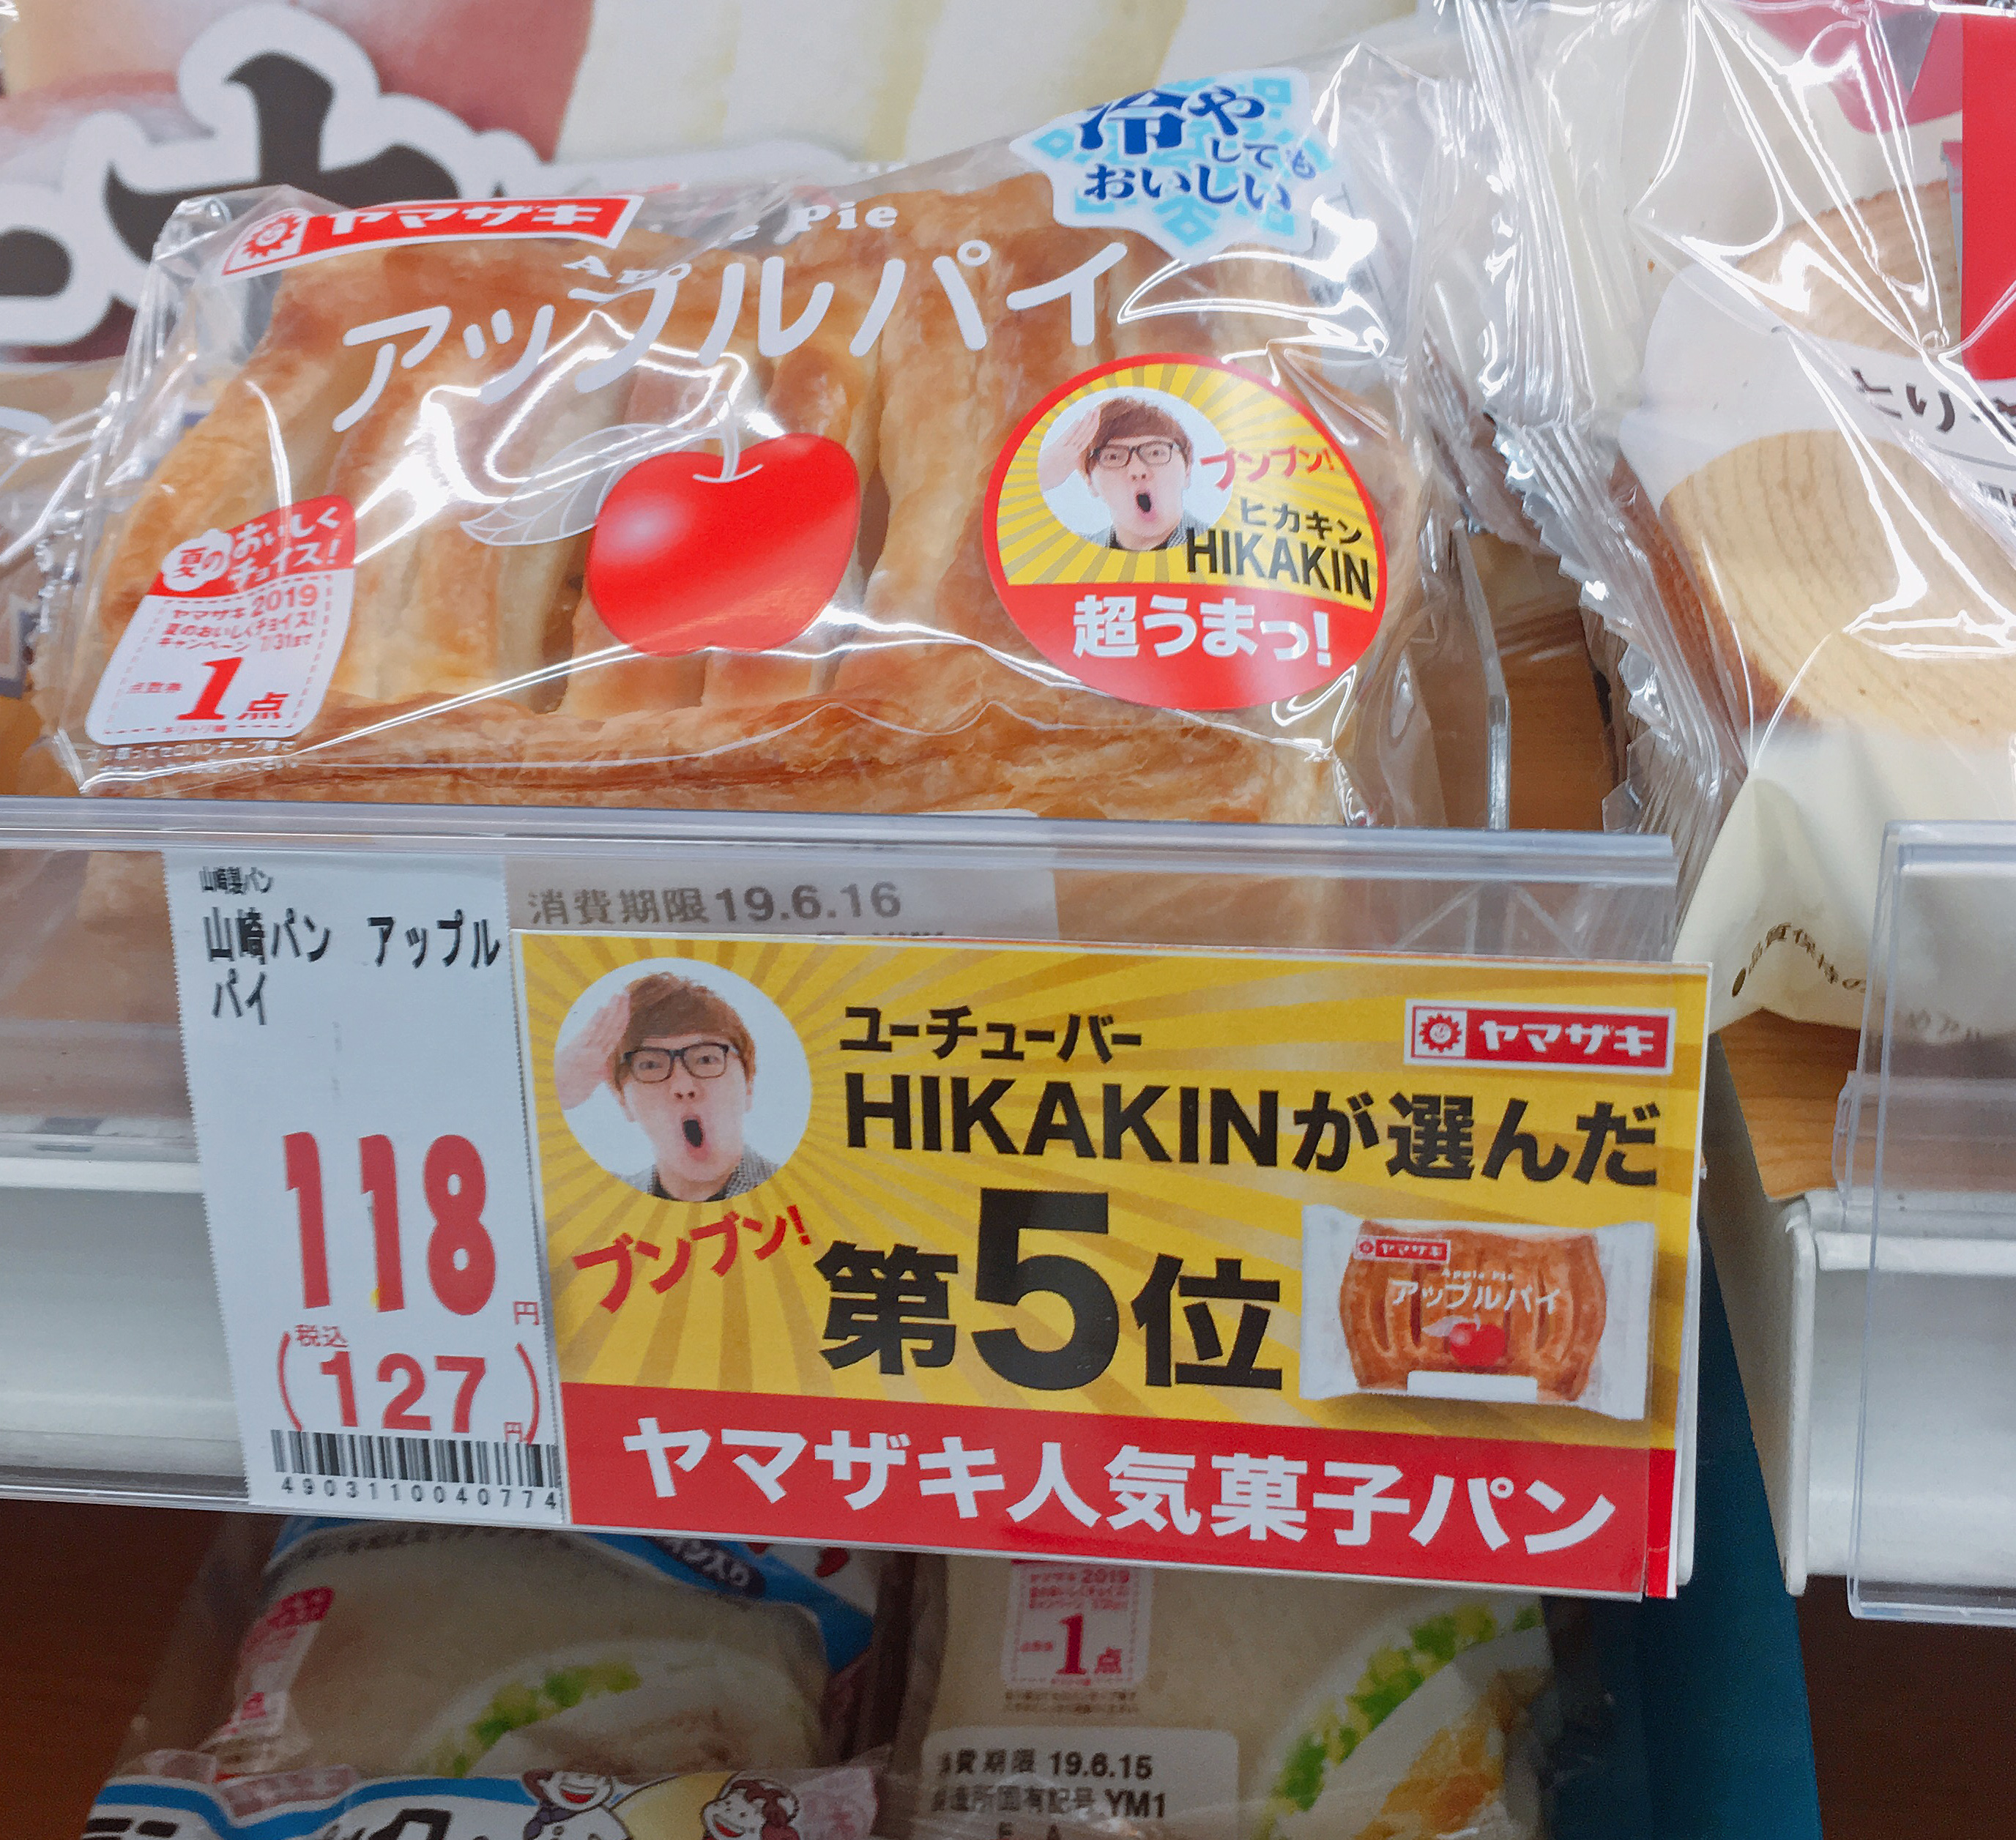 ヒカキンさんが選ぶ 山崎製パン菓子パンランキング 1位に輝いたカレーパンを食べてみたら 結構びっくりした ロケットニュース24